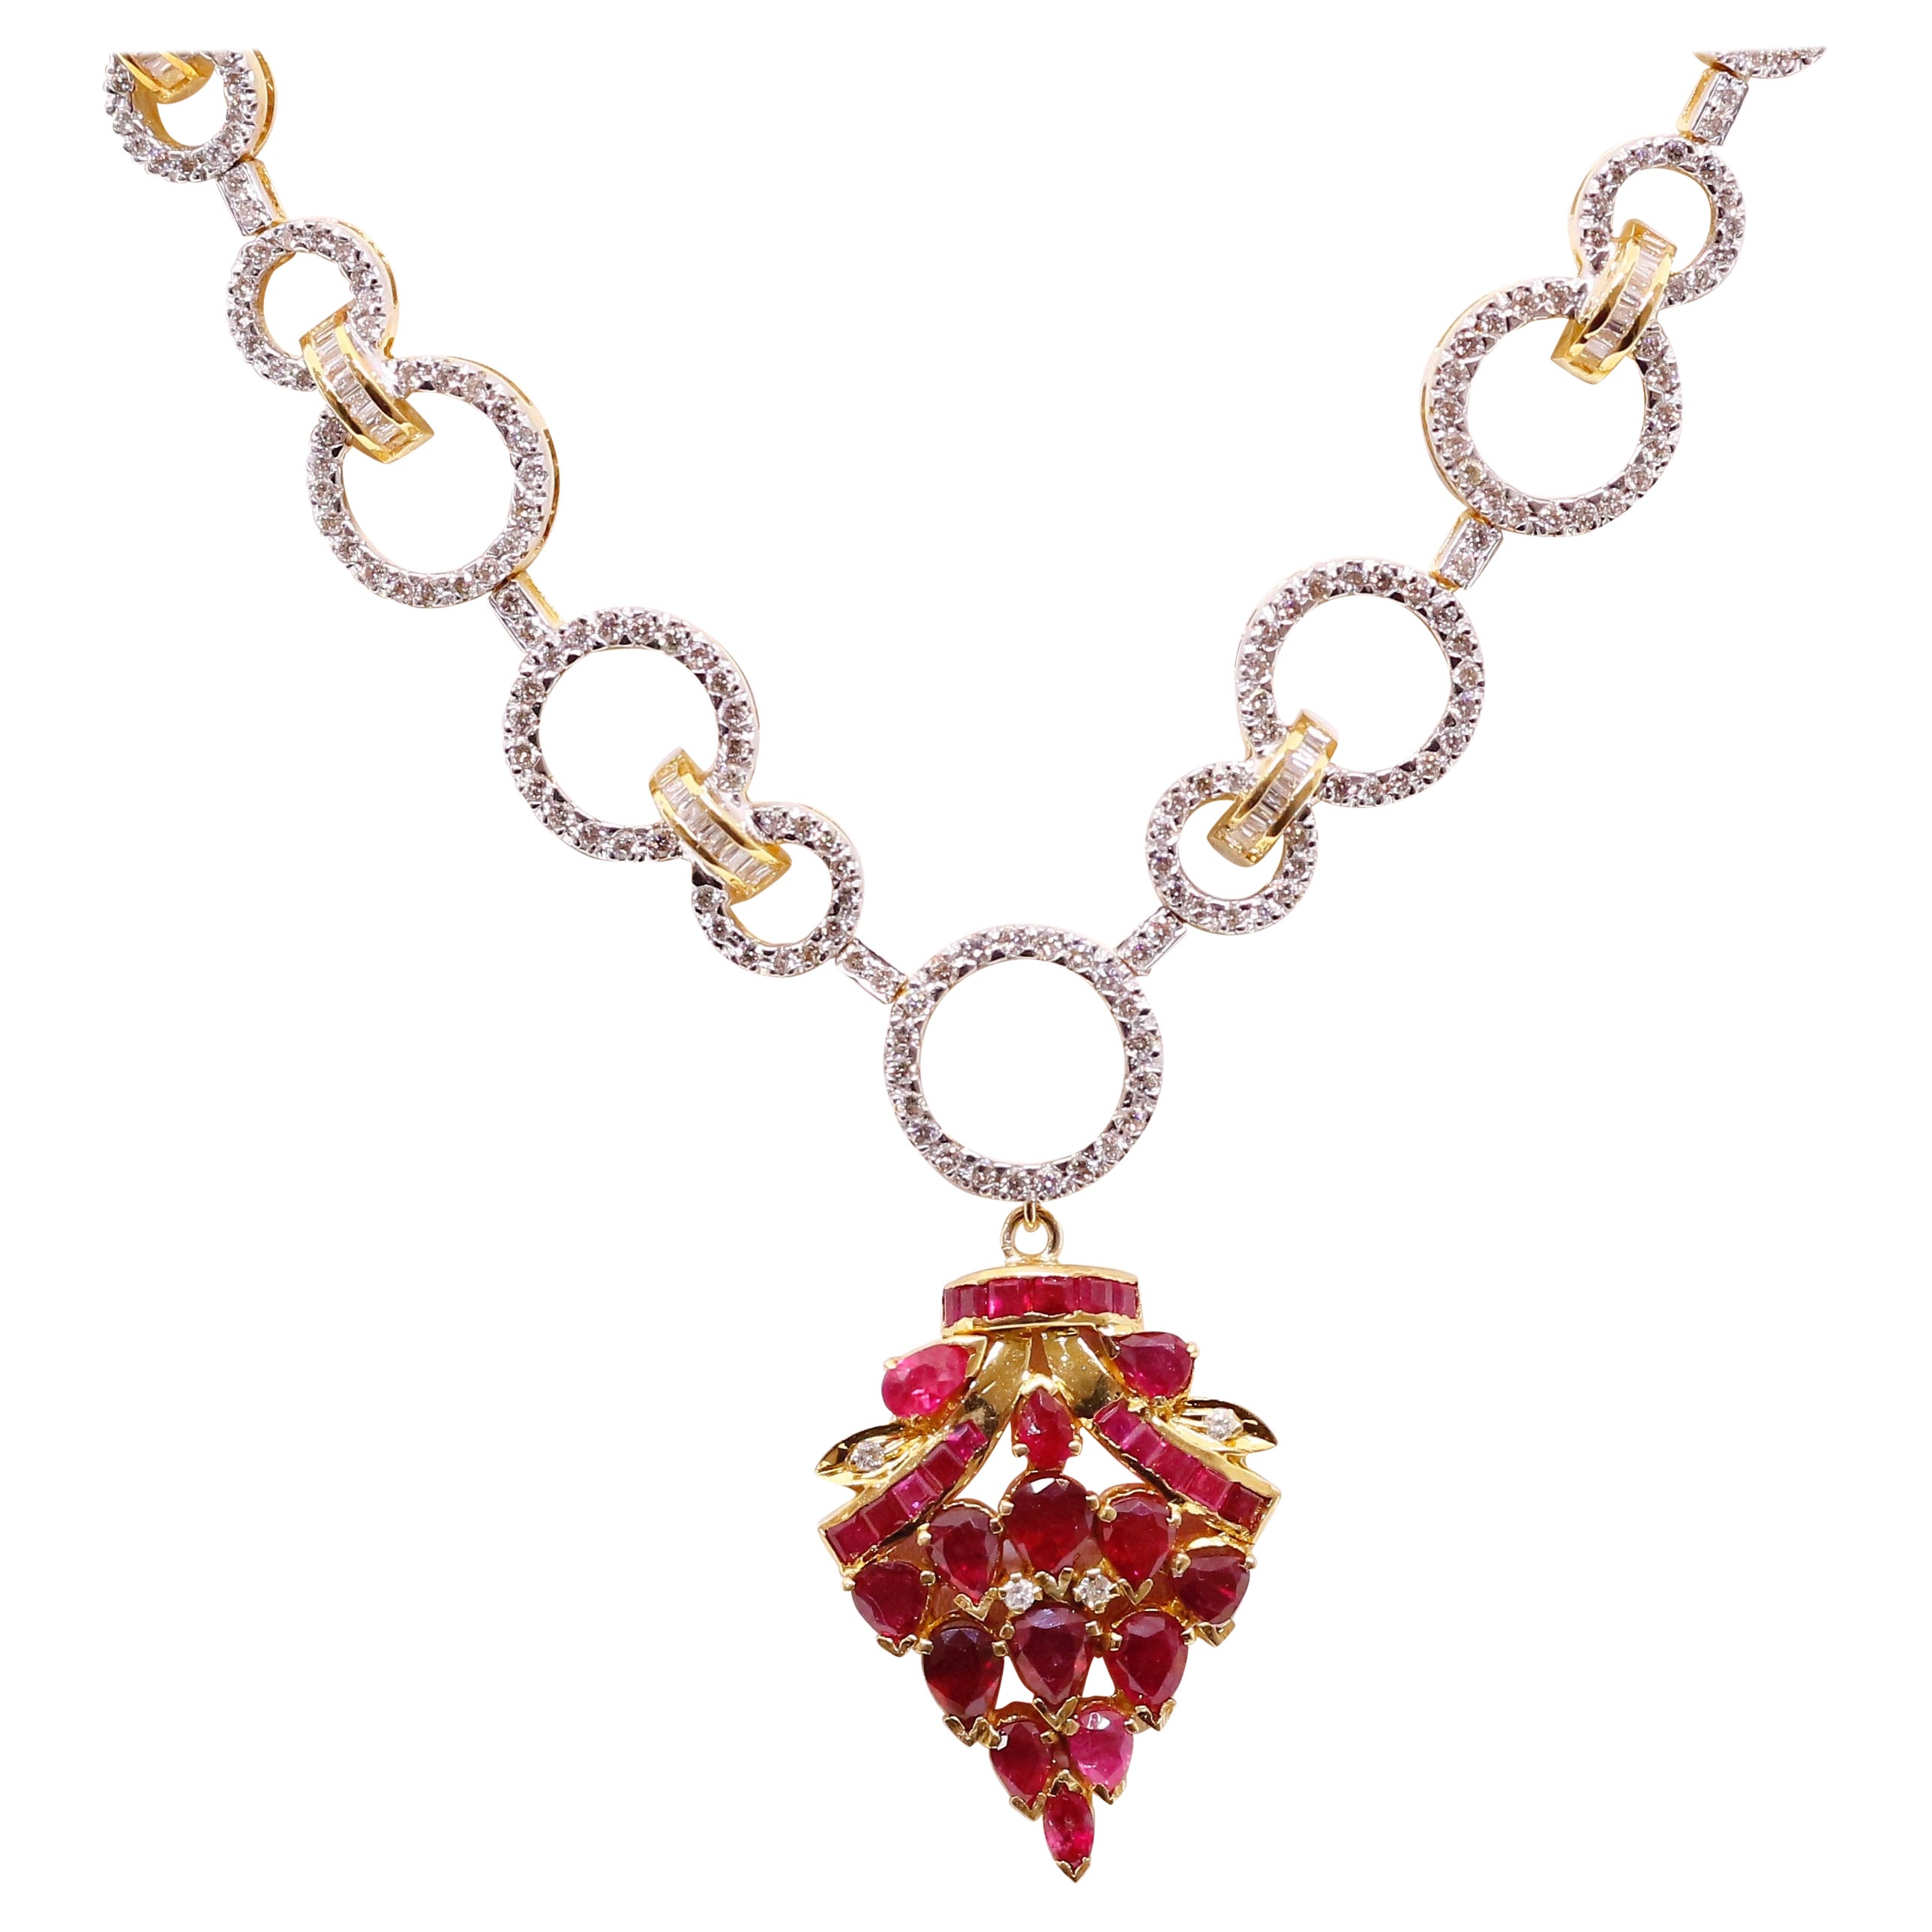 Collier bouquet de rubis : pendentif et collier à créoles en diamants